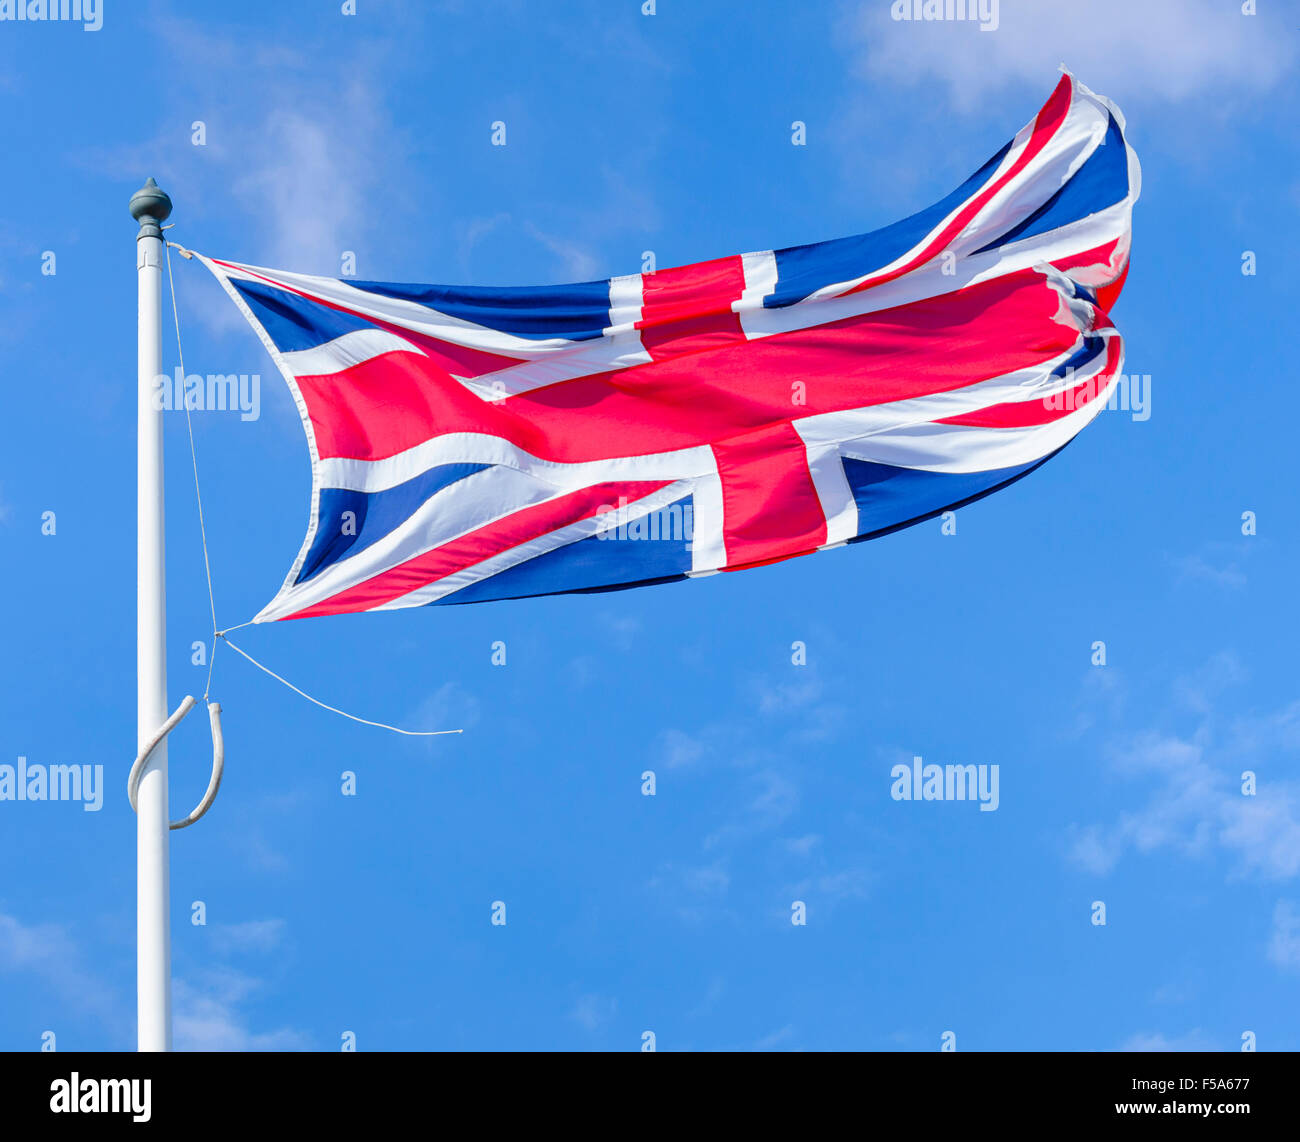 Union Jack, la bandera del Reino Unido de Gran Bretaña e Irlanda del Norte, volando sobre un poste contra el cielo azul. Foto de stock